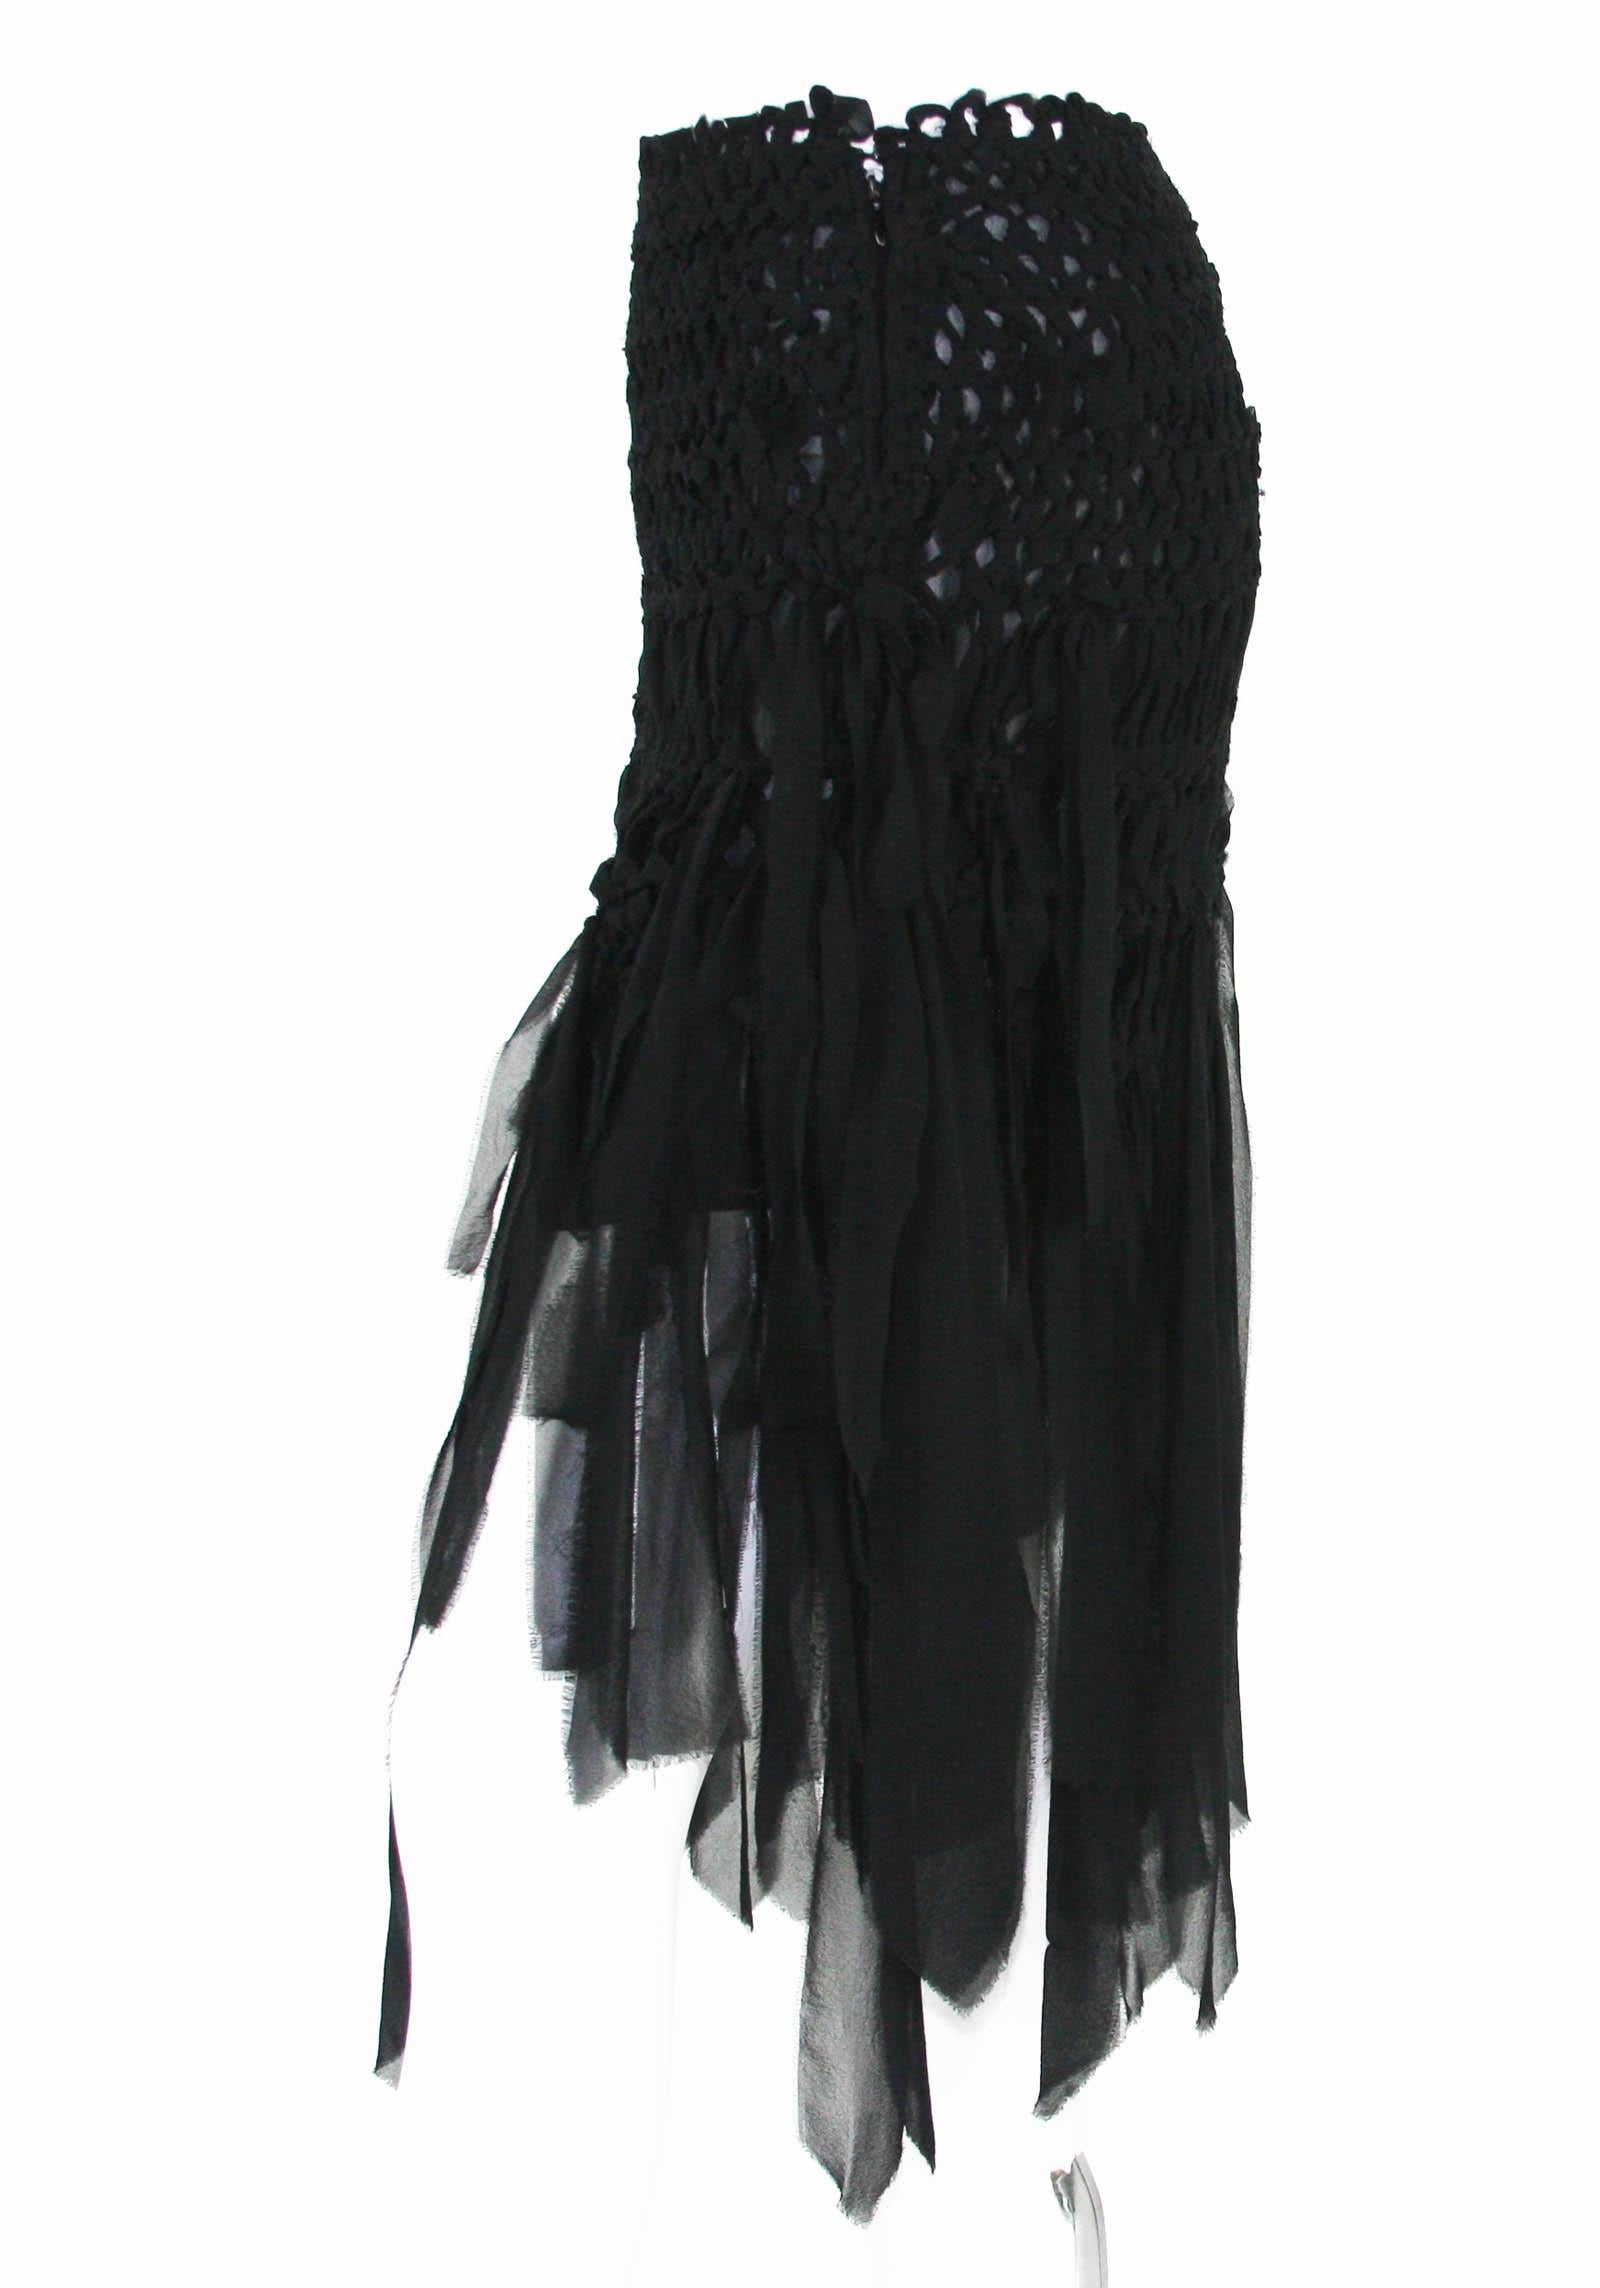 Tom Ford for Yves Saint Laurent Mini Black Silk Woven Fringe Skirt, S / S 2002 1